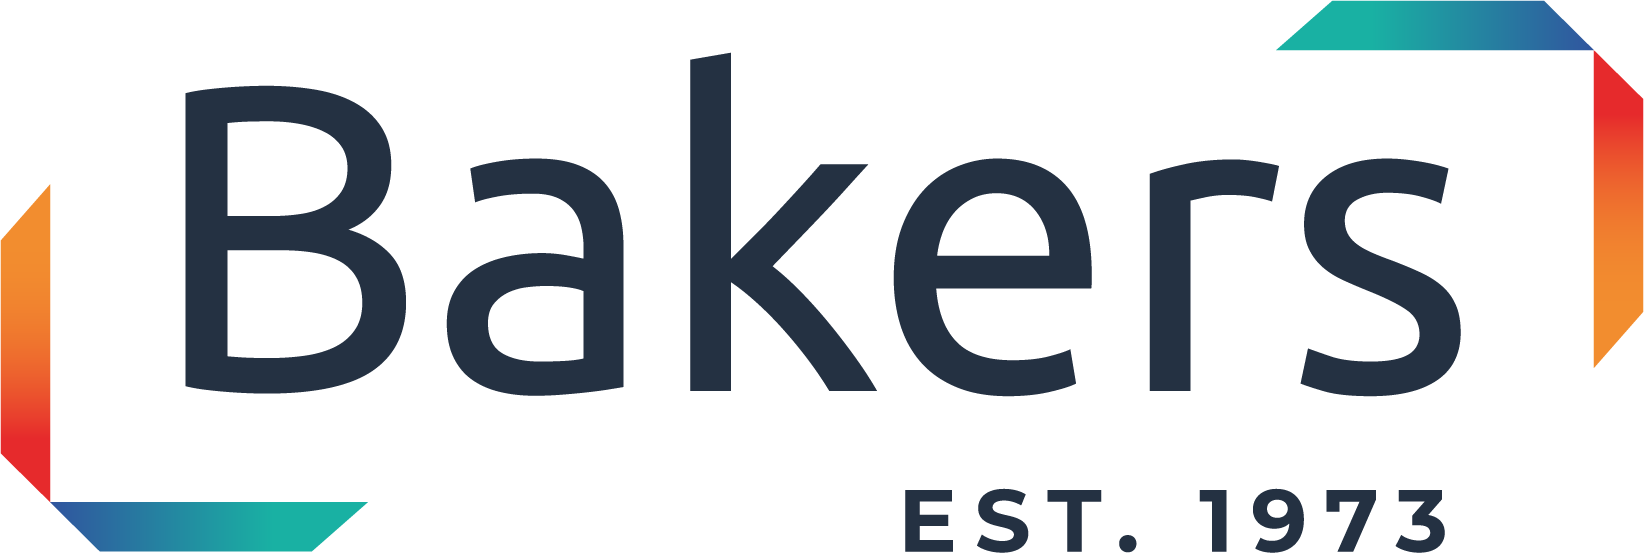 Baker Labels logo